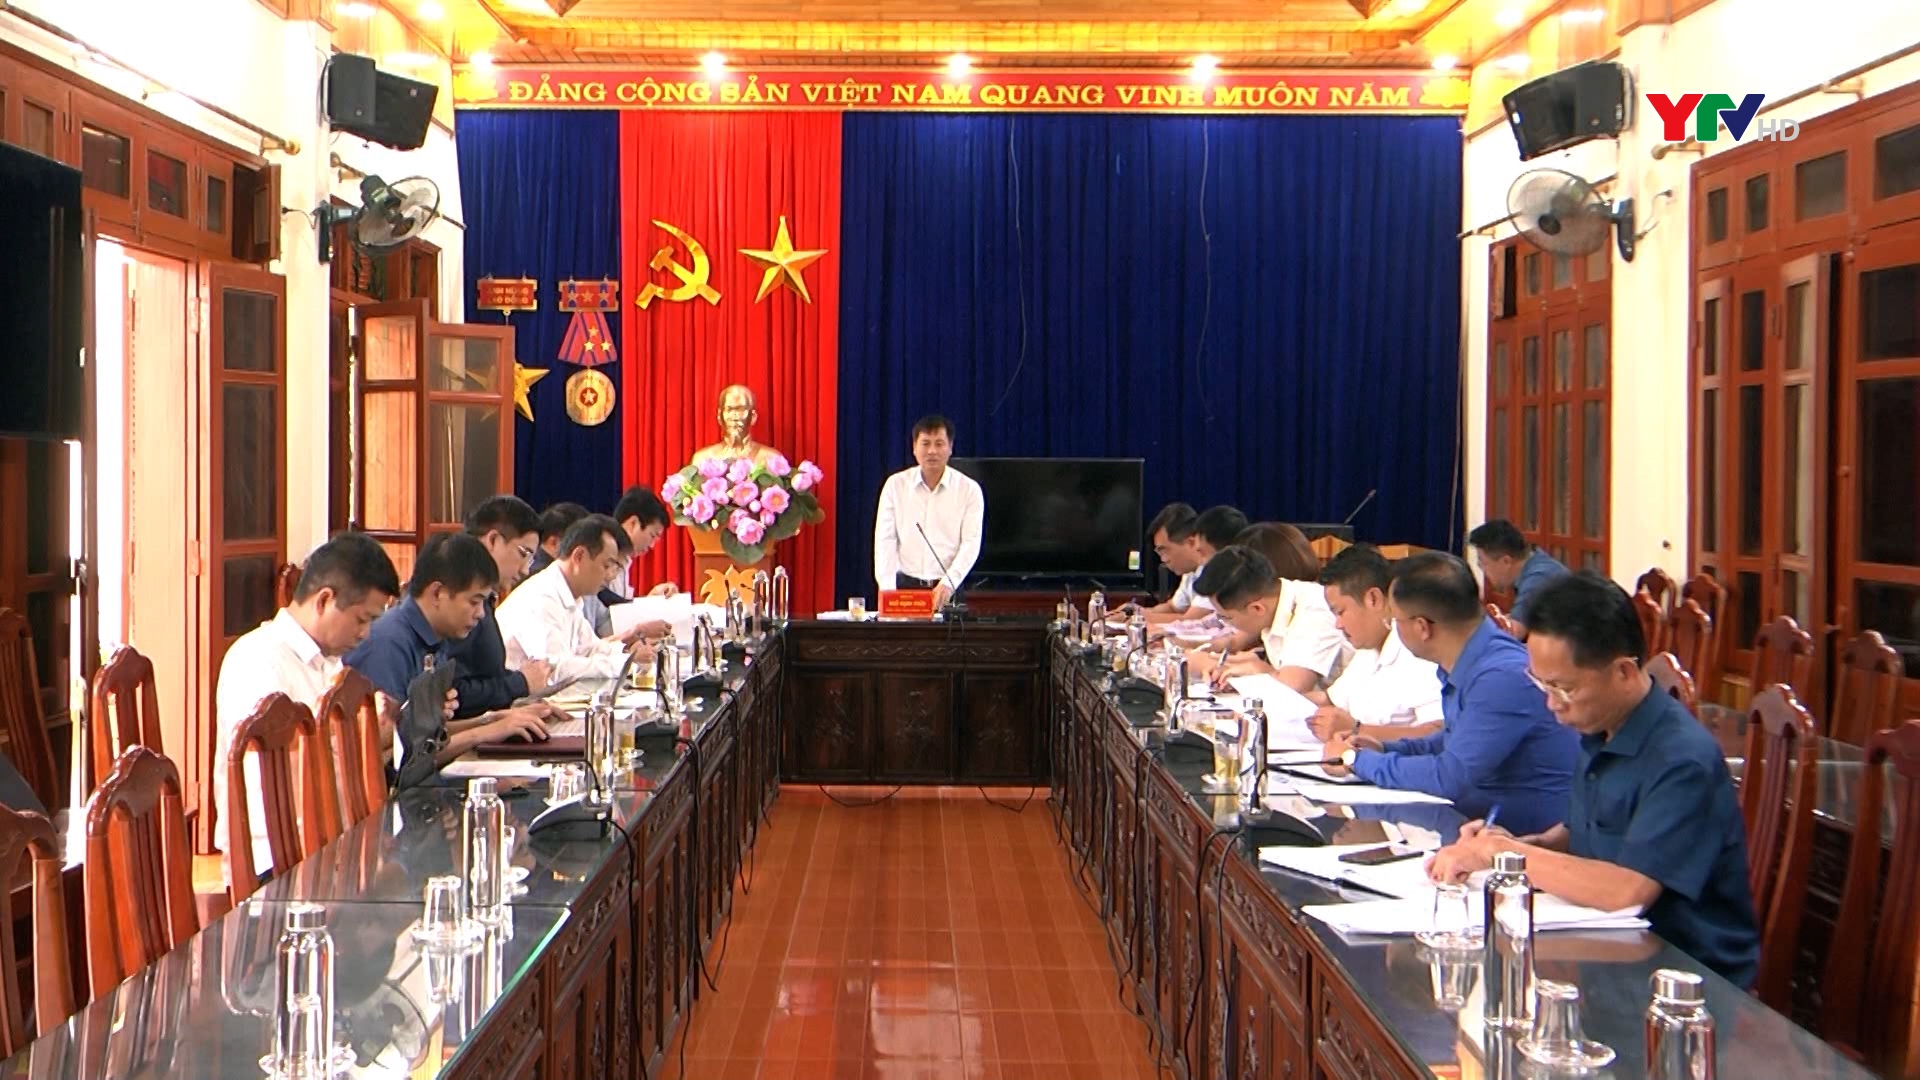 Đồng chí Phó Chủ tịch UBND tỉnh Ngô Hạnh Phúc làm việc tại huyện Mù Cang Chải